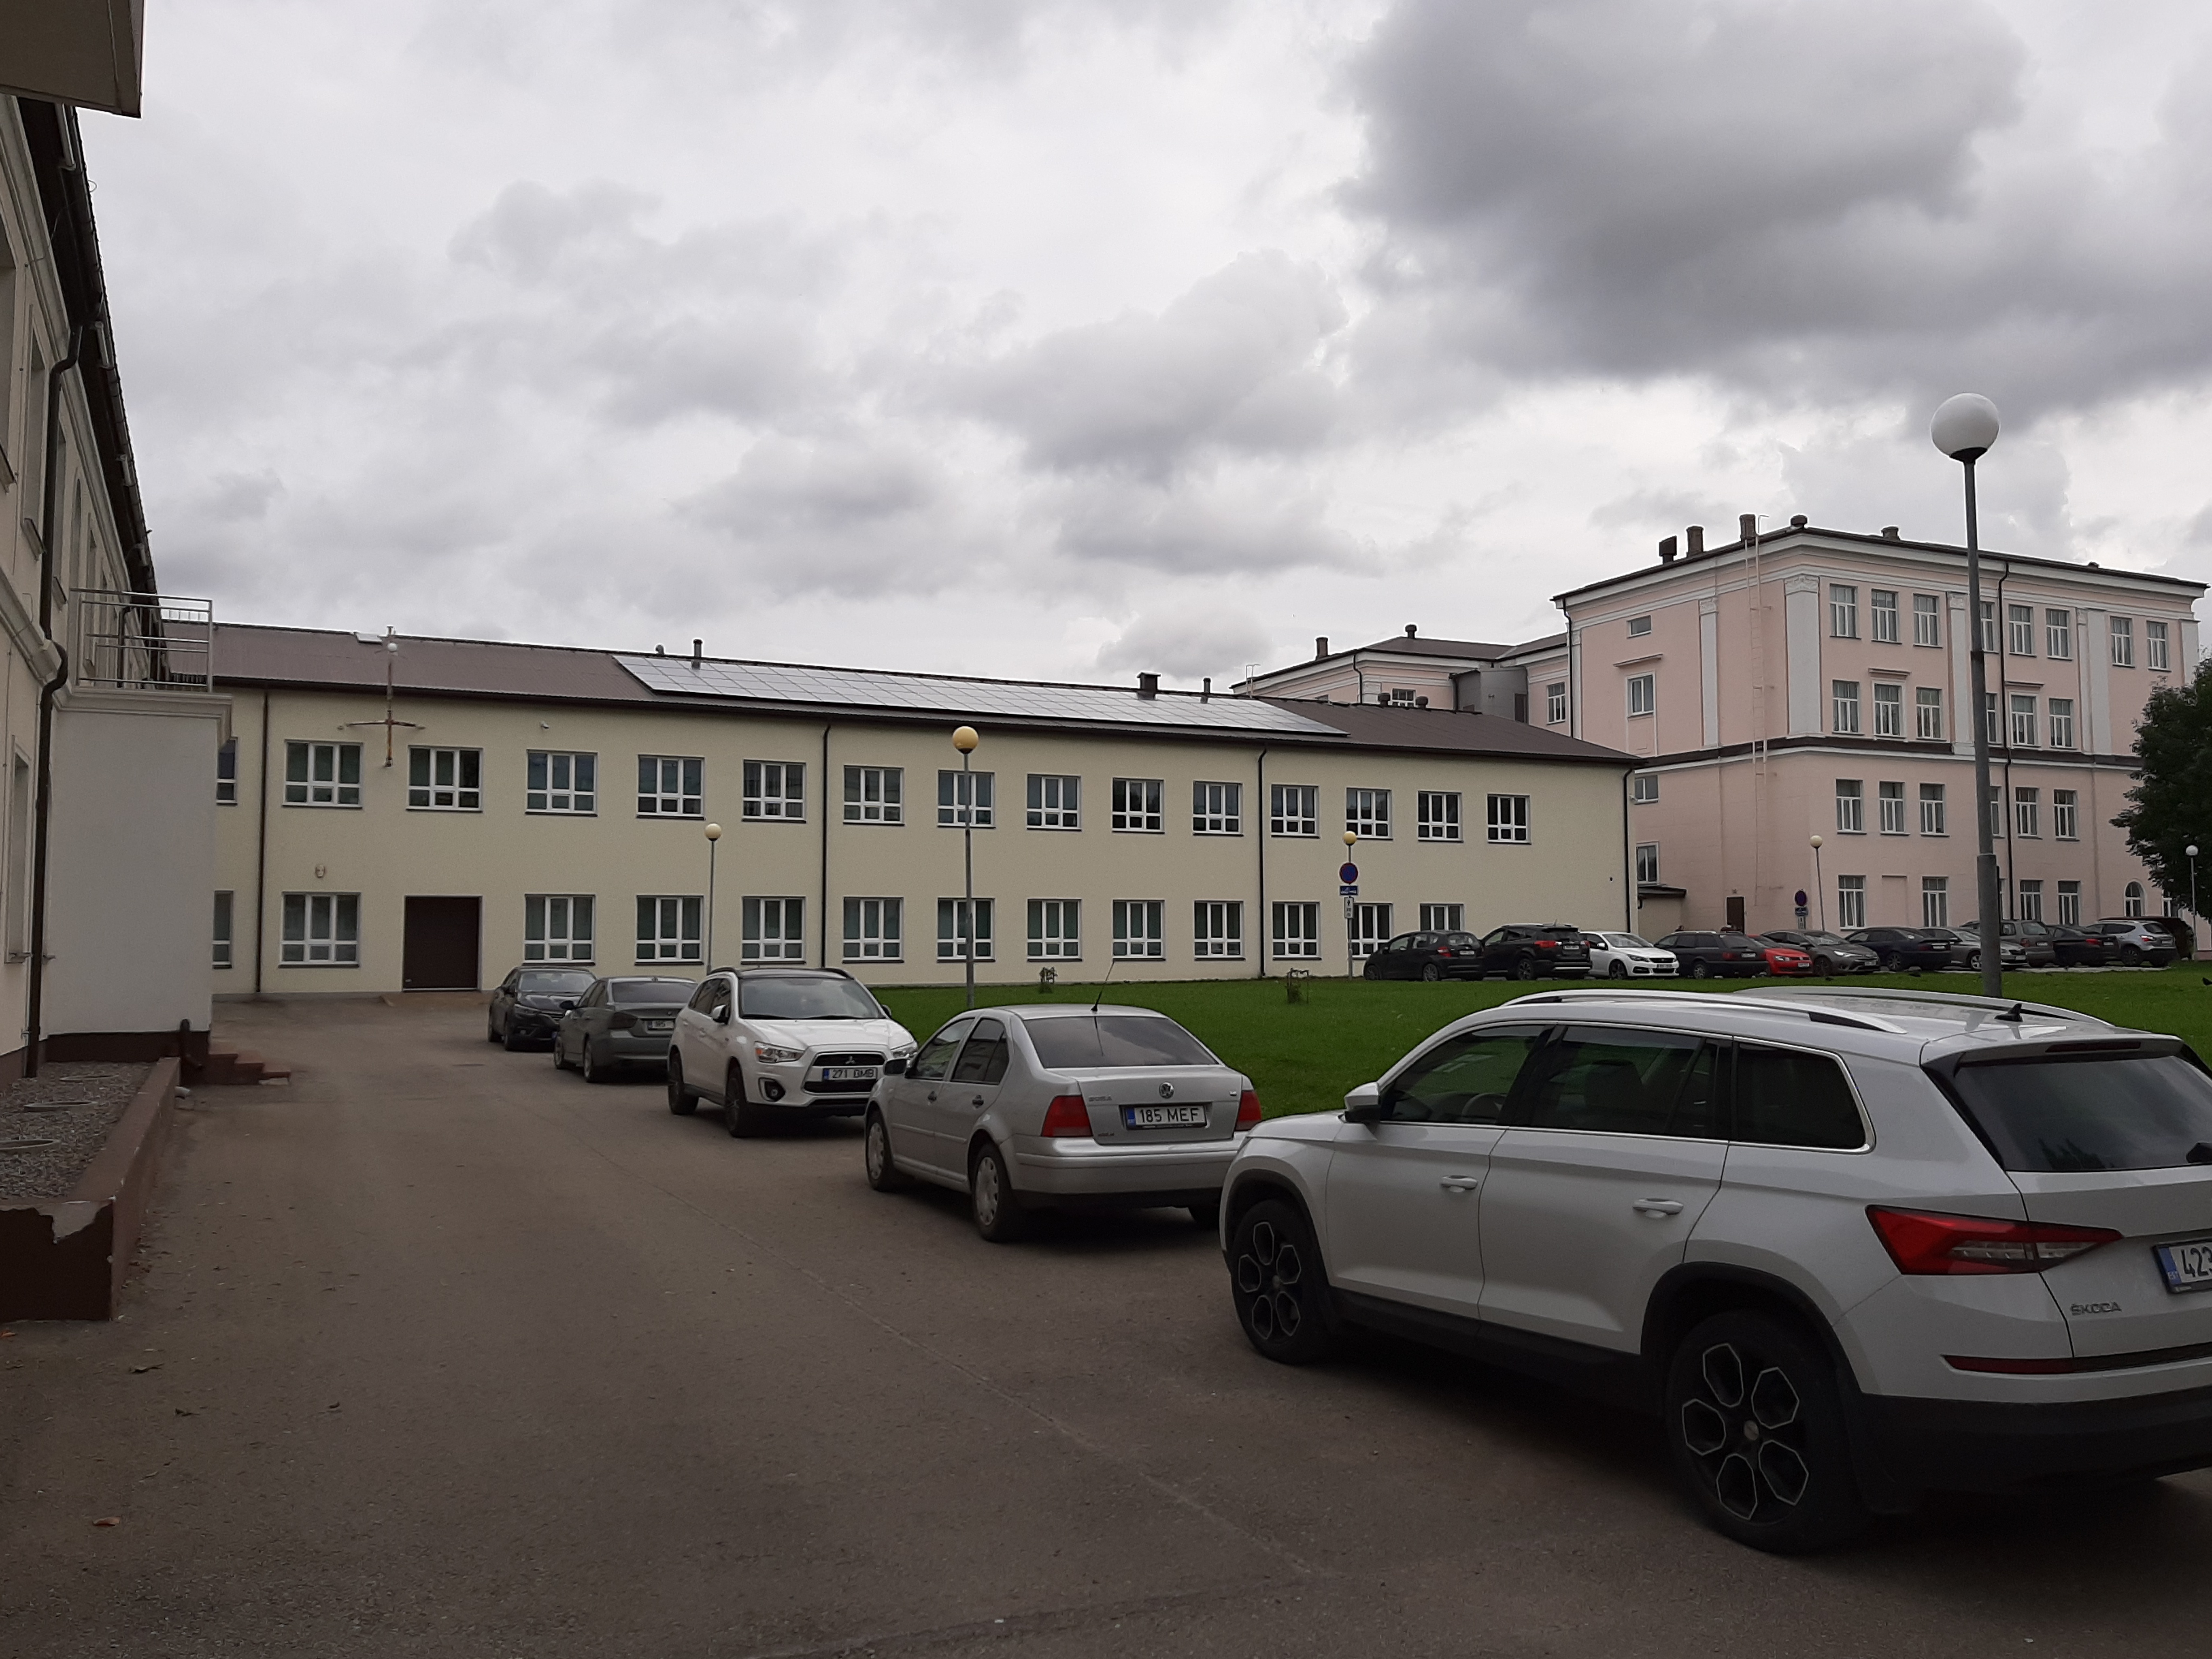 Main building and workshops of Kohtla-Järve Chemistry-Metetehnikumi rephoto